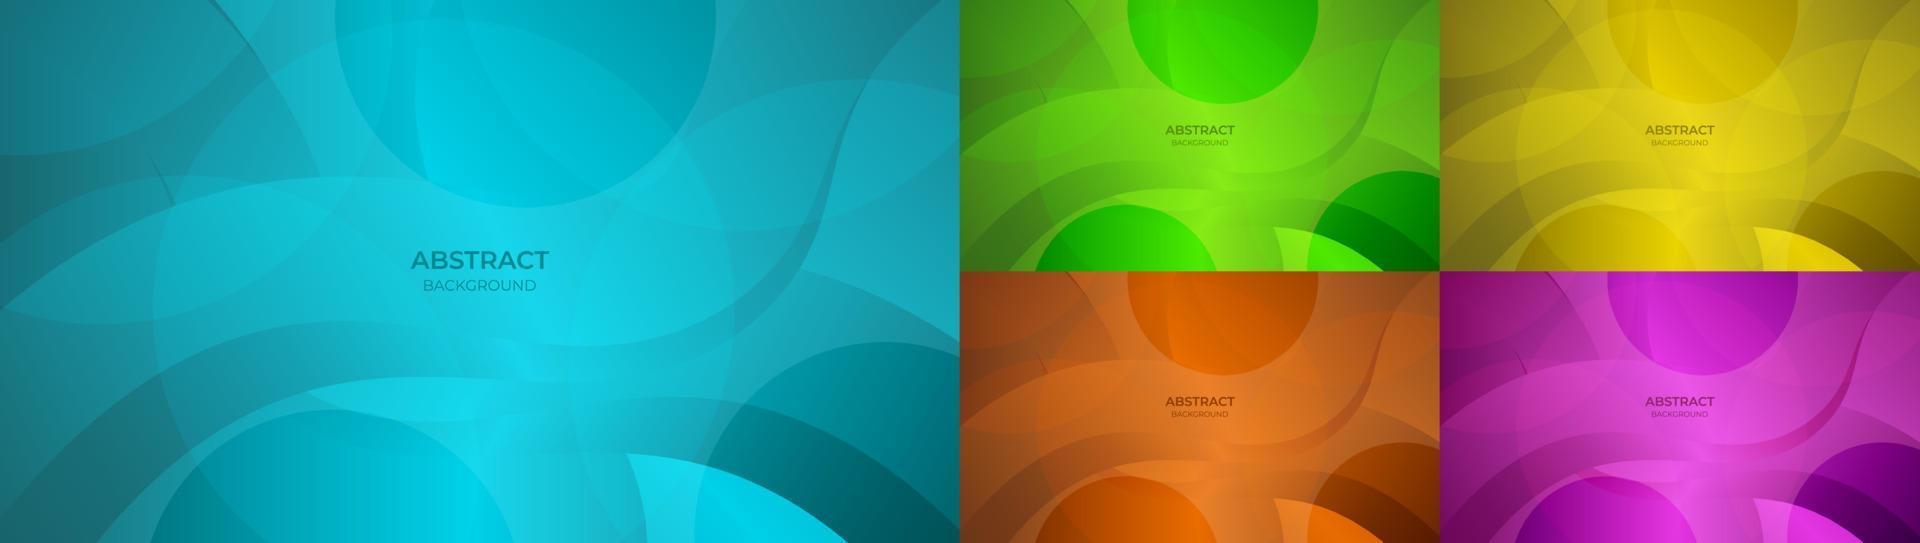 arrière-plan avec un design fluide abstrait coloré bleu, vert, jaune, orange et violet dégradé. illustration vectorielle vecteur